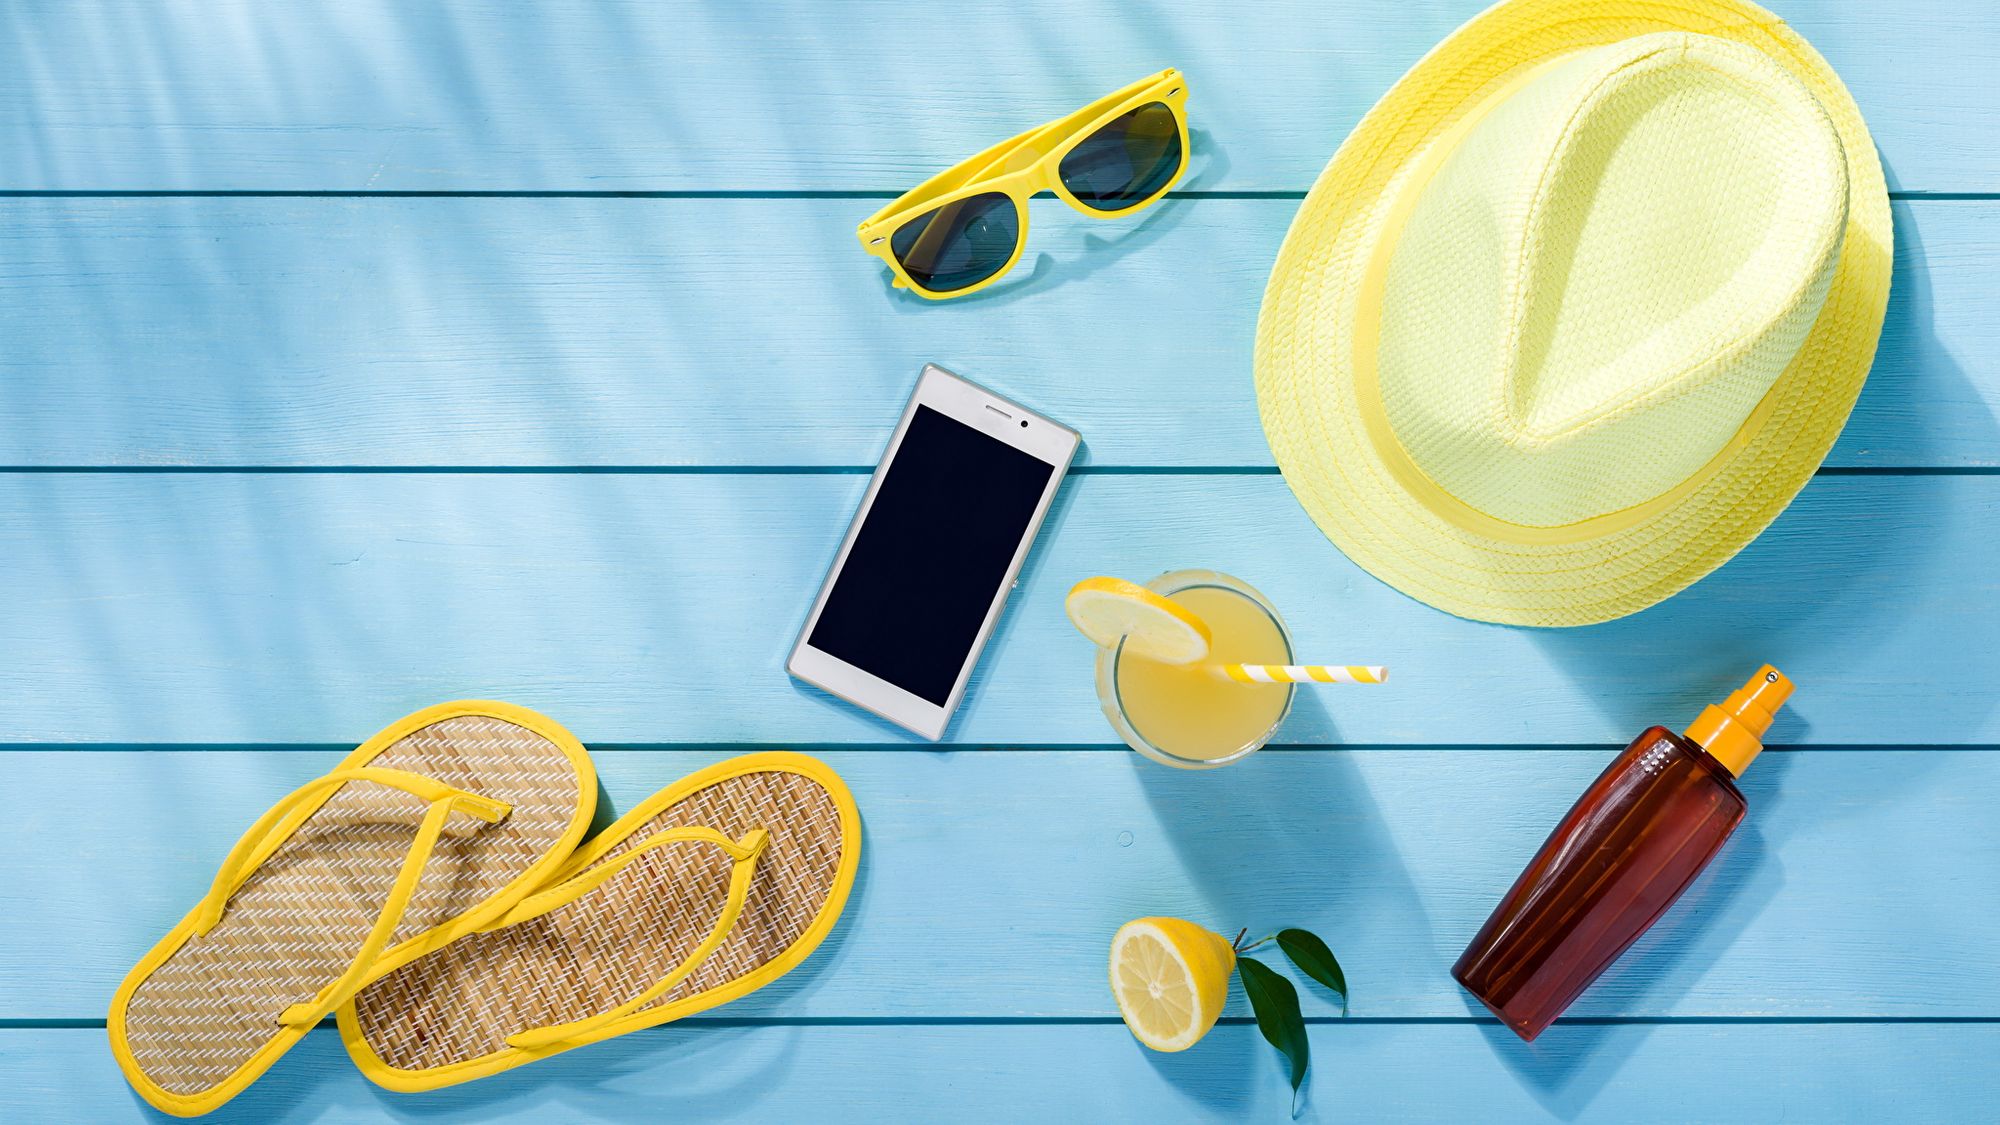 5 būdai apsaugoti savo išmanųjį telefoną vasaros metu